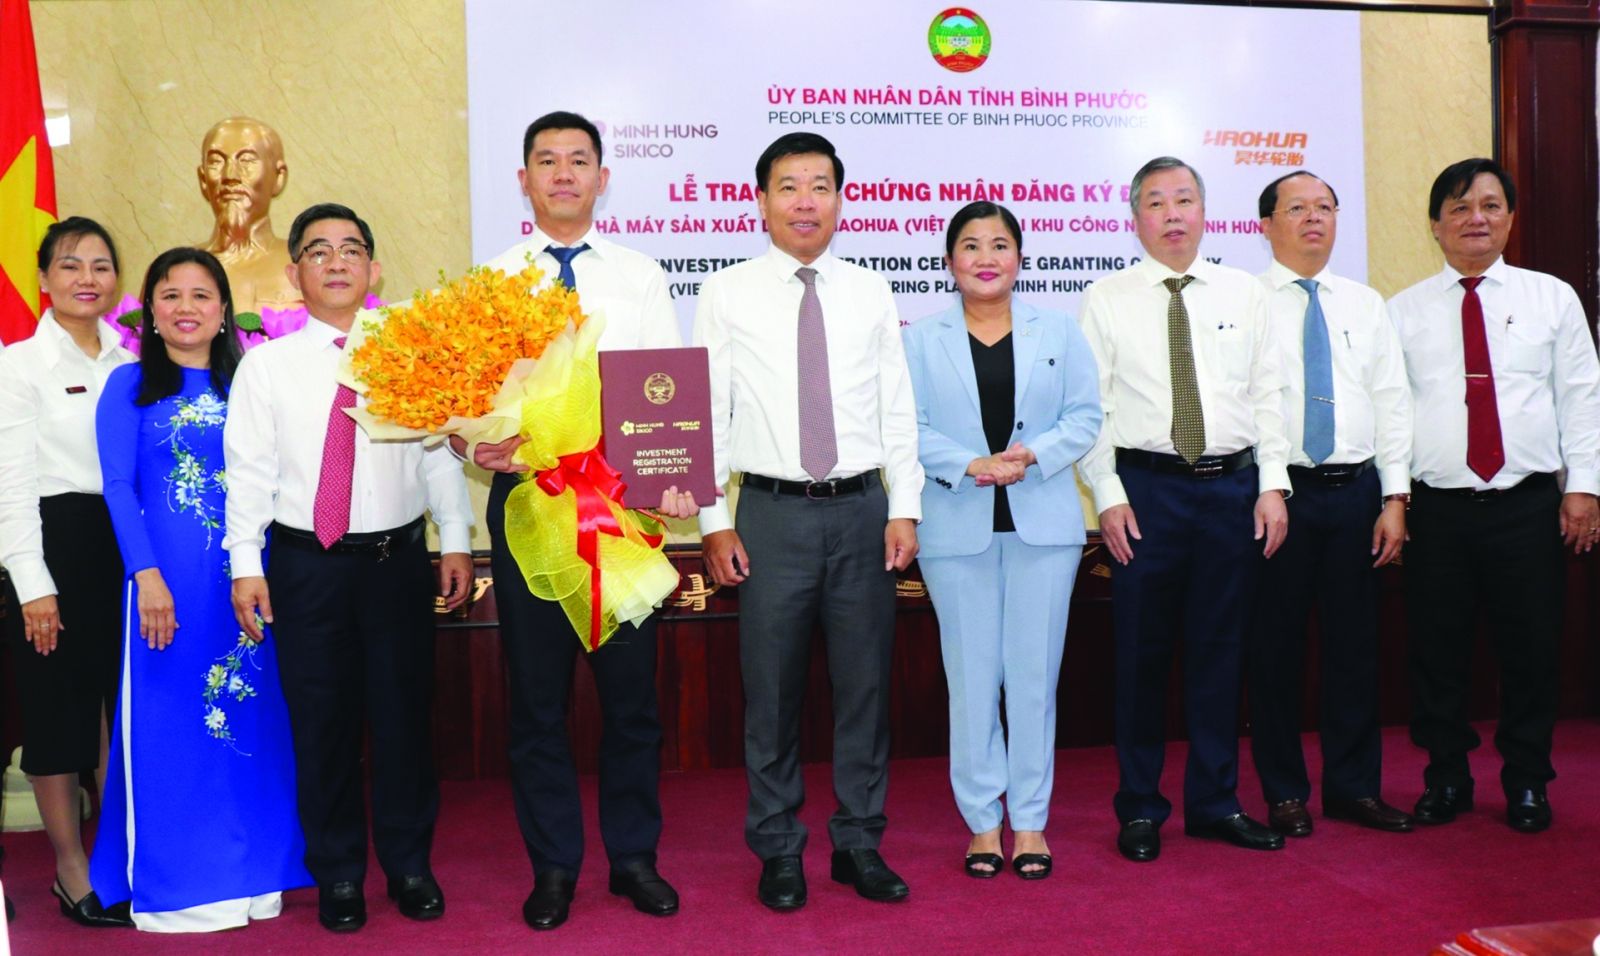 Lãnh đạo tỉnh Bình Phước trao chứng nhận đầu tư cho Dự án Nhà máy sản xuất lốp xe HAOHUA.